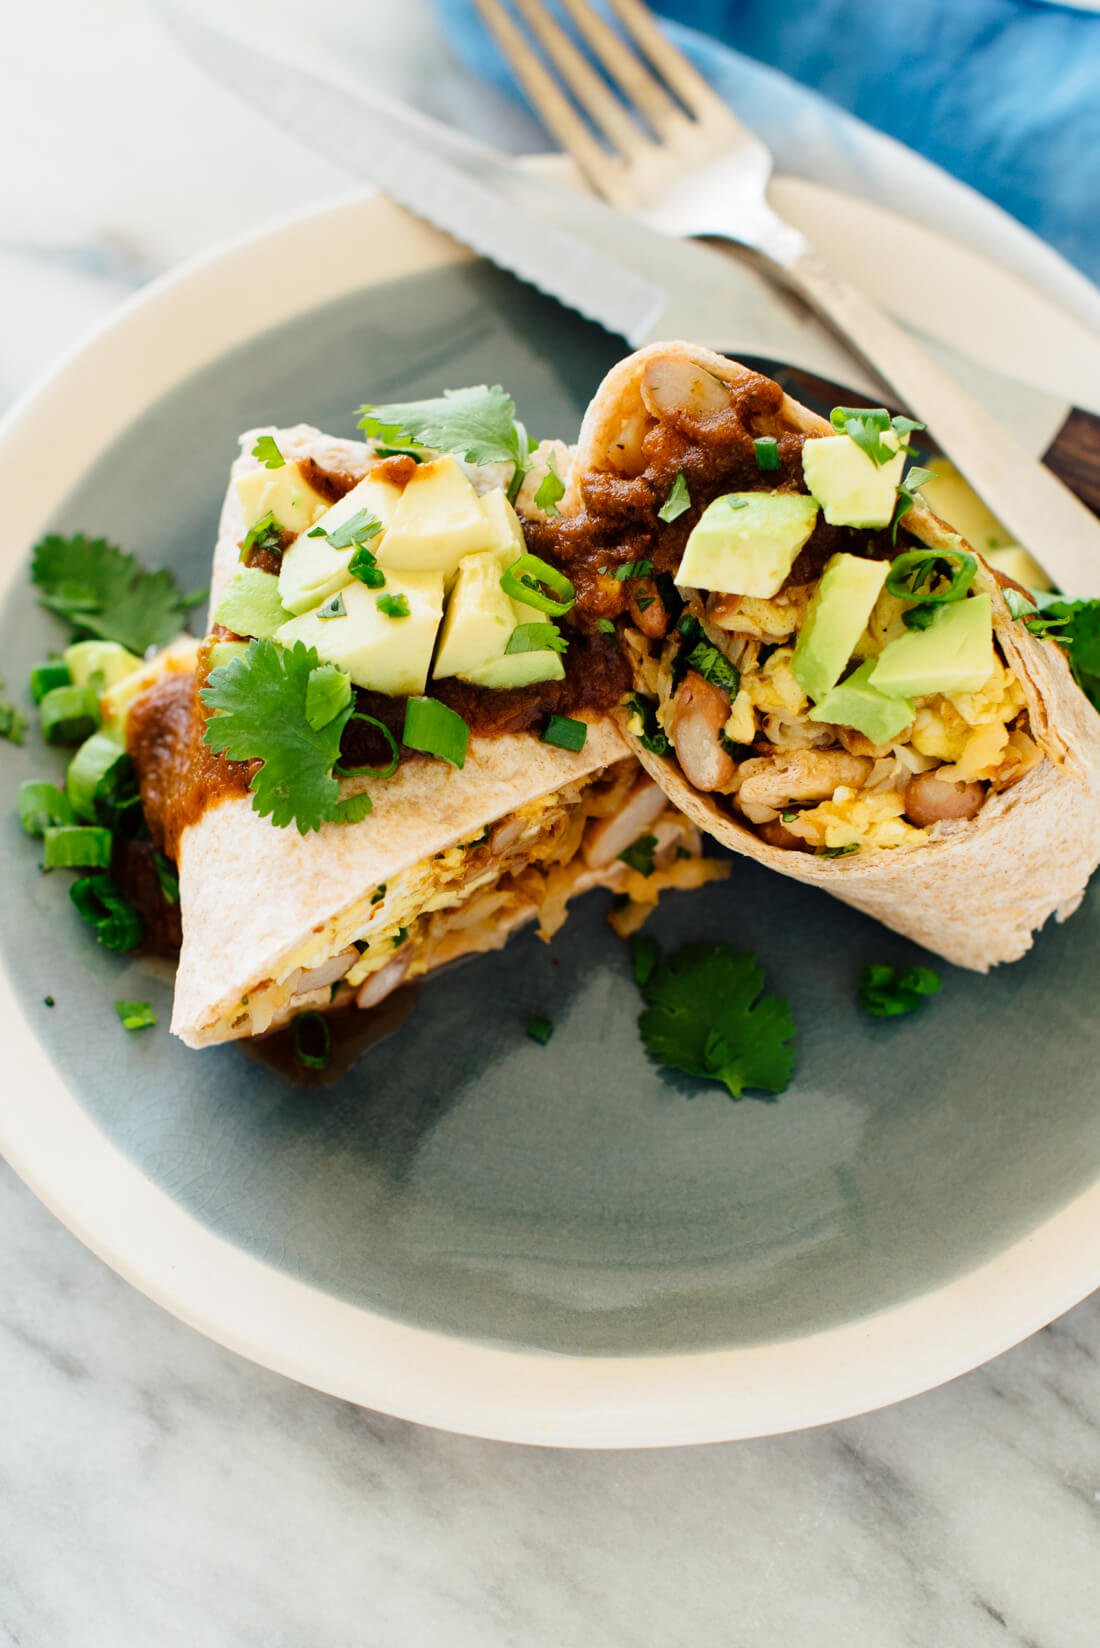 Vegetarian Burrito Recipes
 easy ve arian burrito recipe